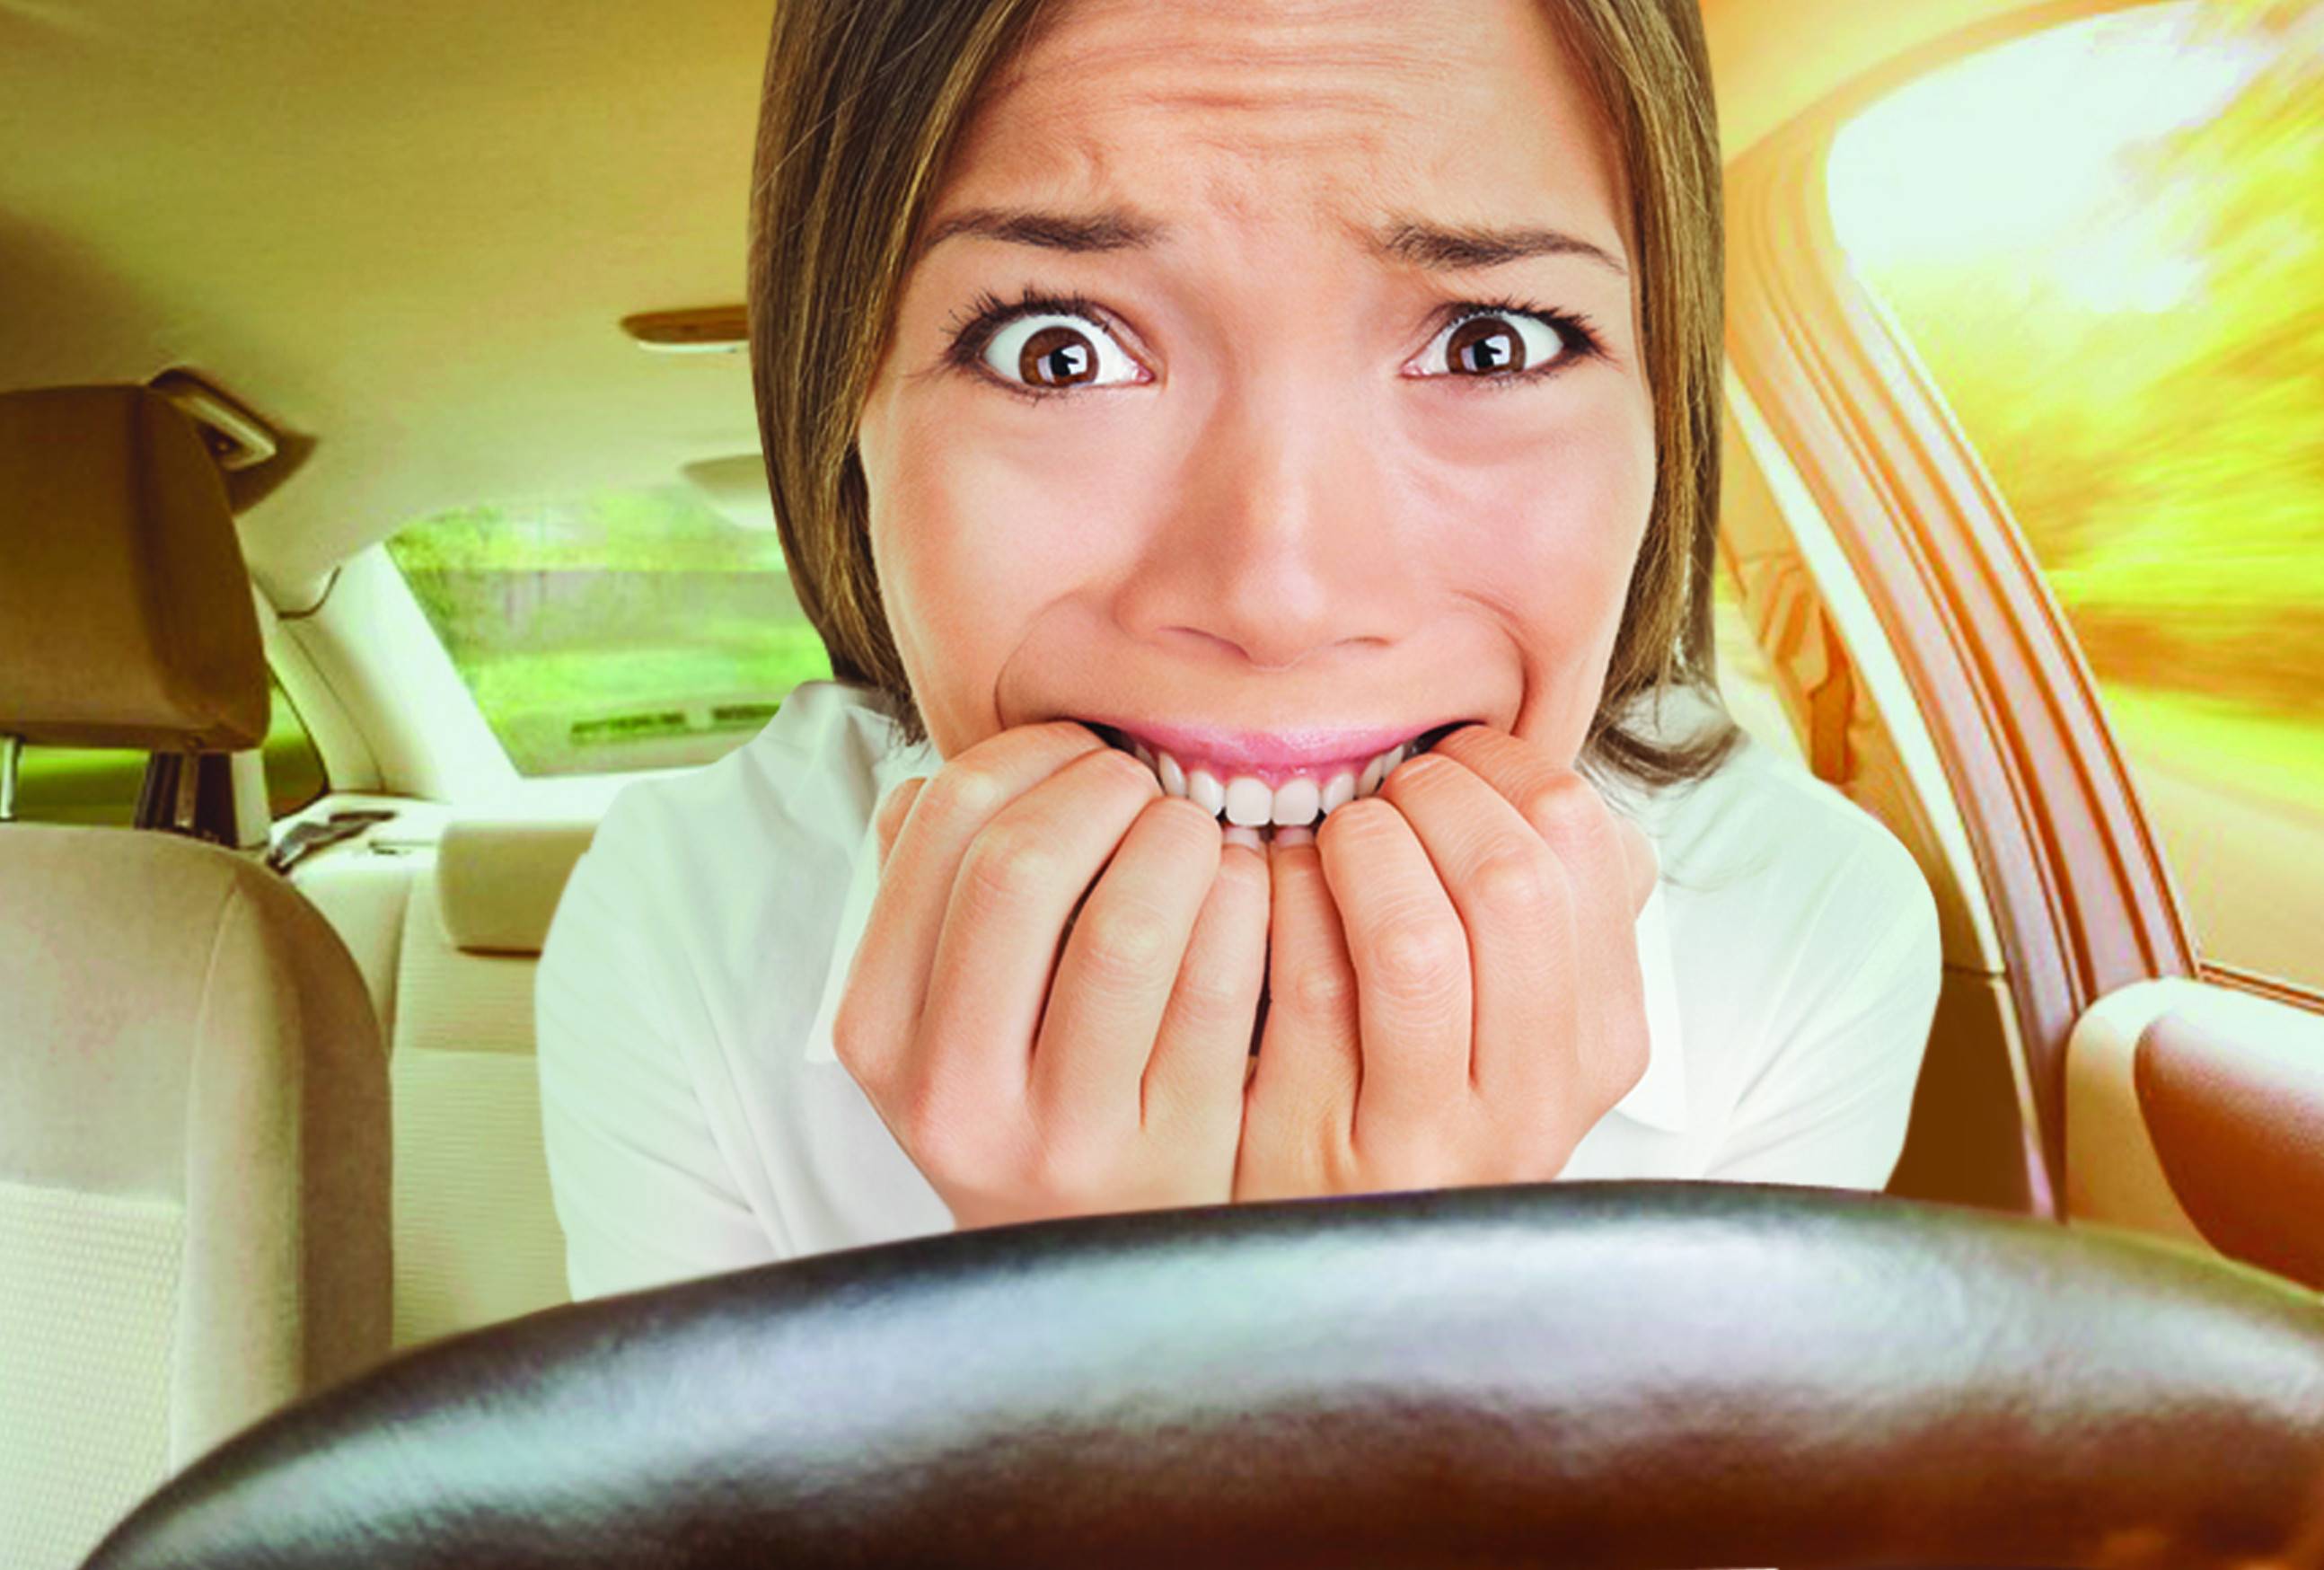 Побороть страх вождения автомобиля новичку-женщине в городе самостоятельно